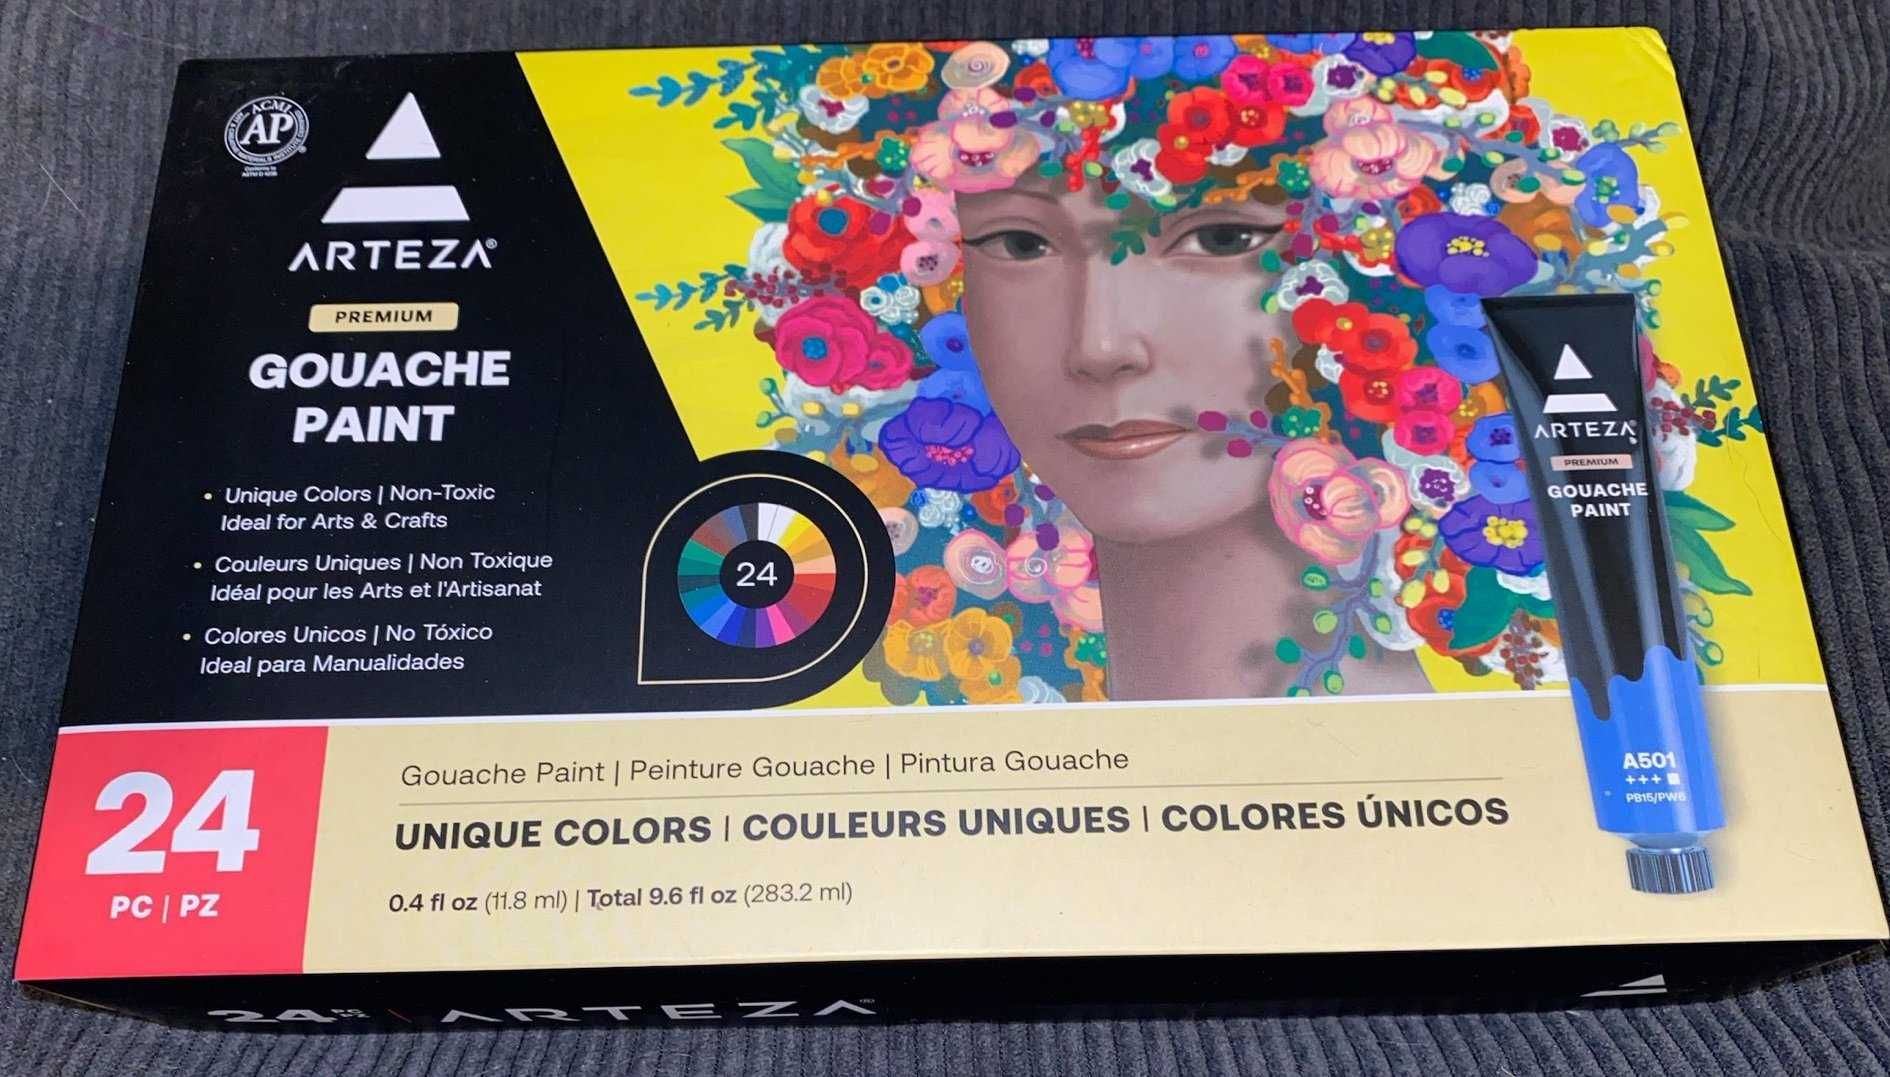 ARTEZA Farby gwaszowe, zestaw 24 farb artystycznych klasy premium